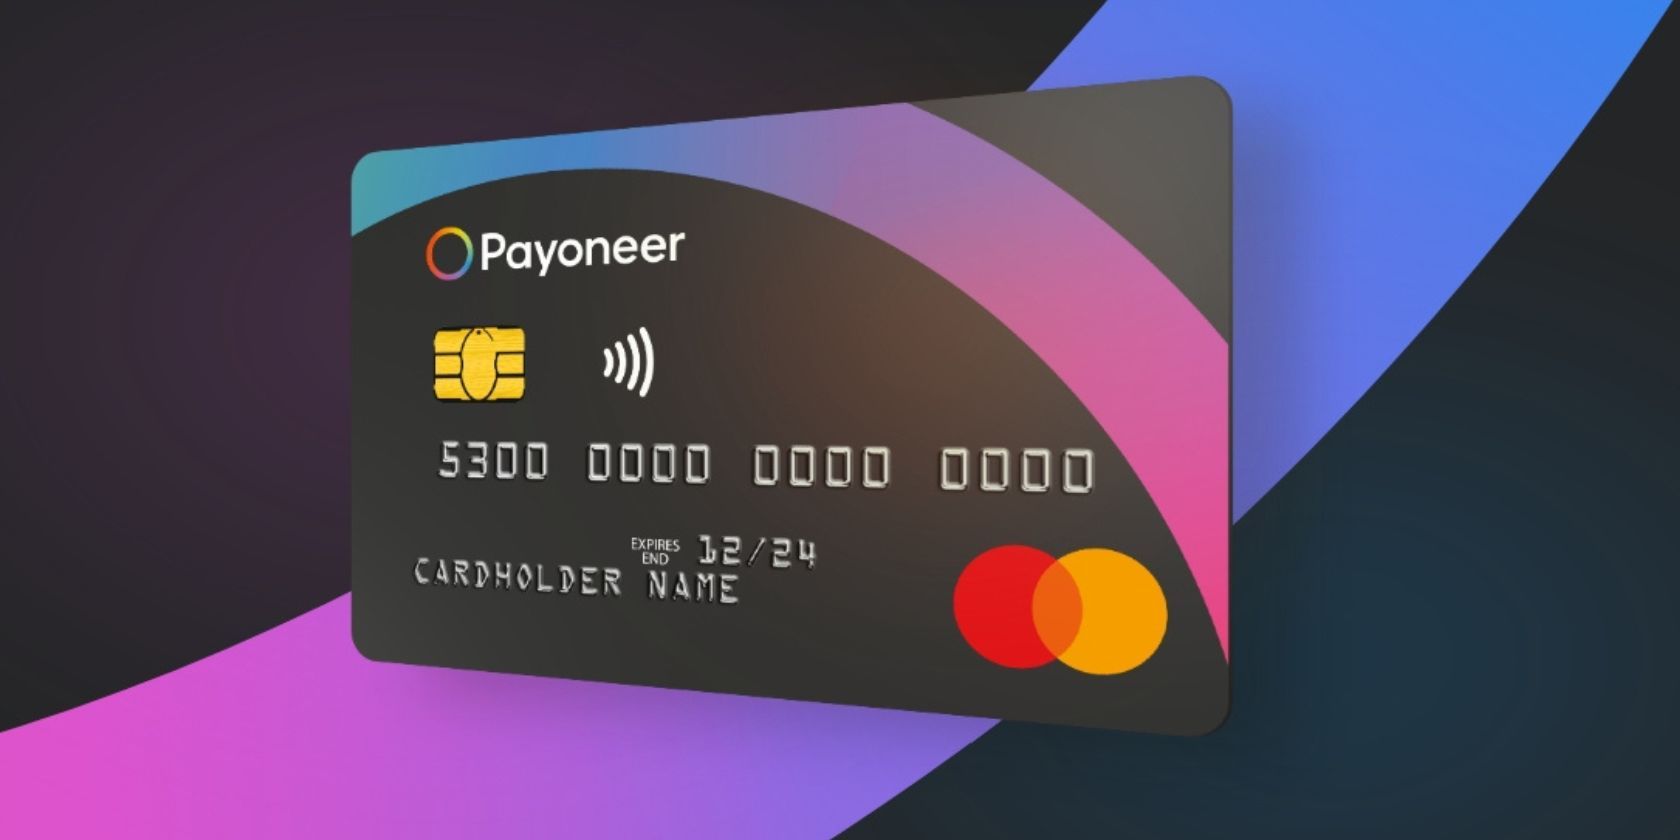 A demo physical Payoneer MasterCard